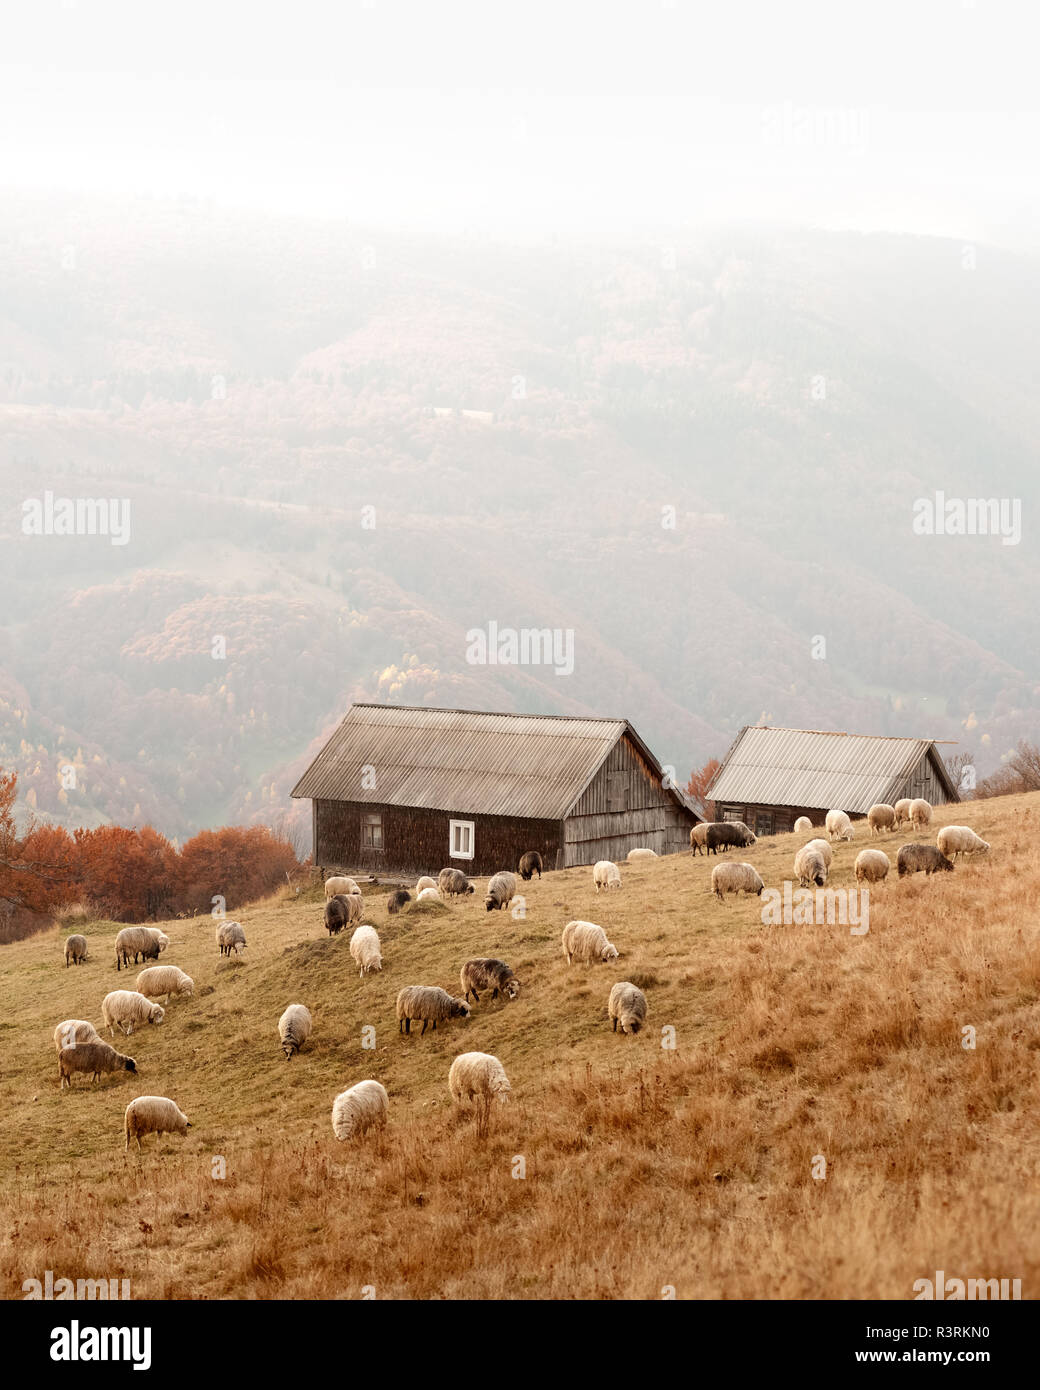 Allevamento di pecore nei pressi di casa in legno in foggy autunno montagne. Carpazi, Ucraina, l'Europa. Fotografia di paesaggi Foto Stock